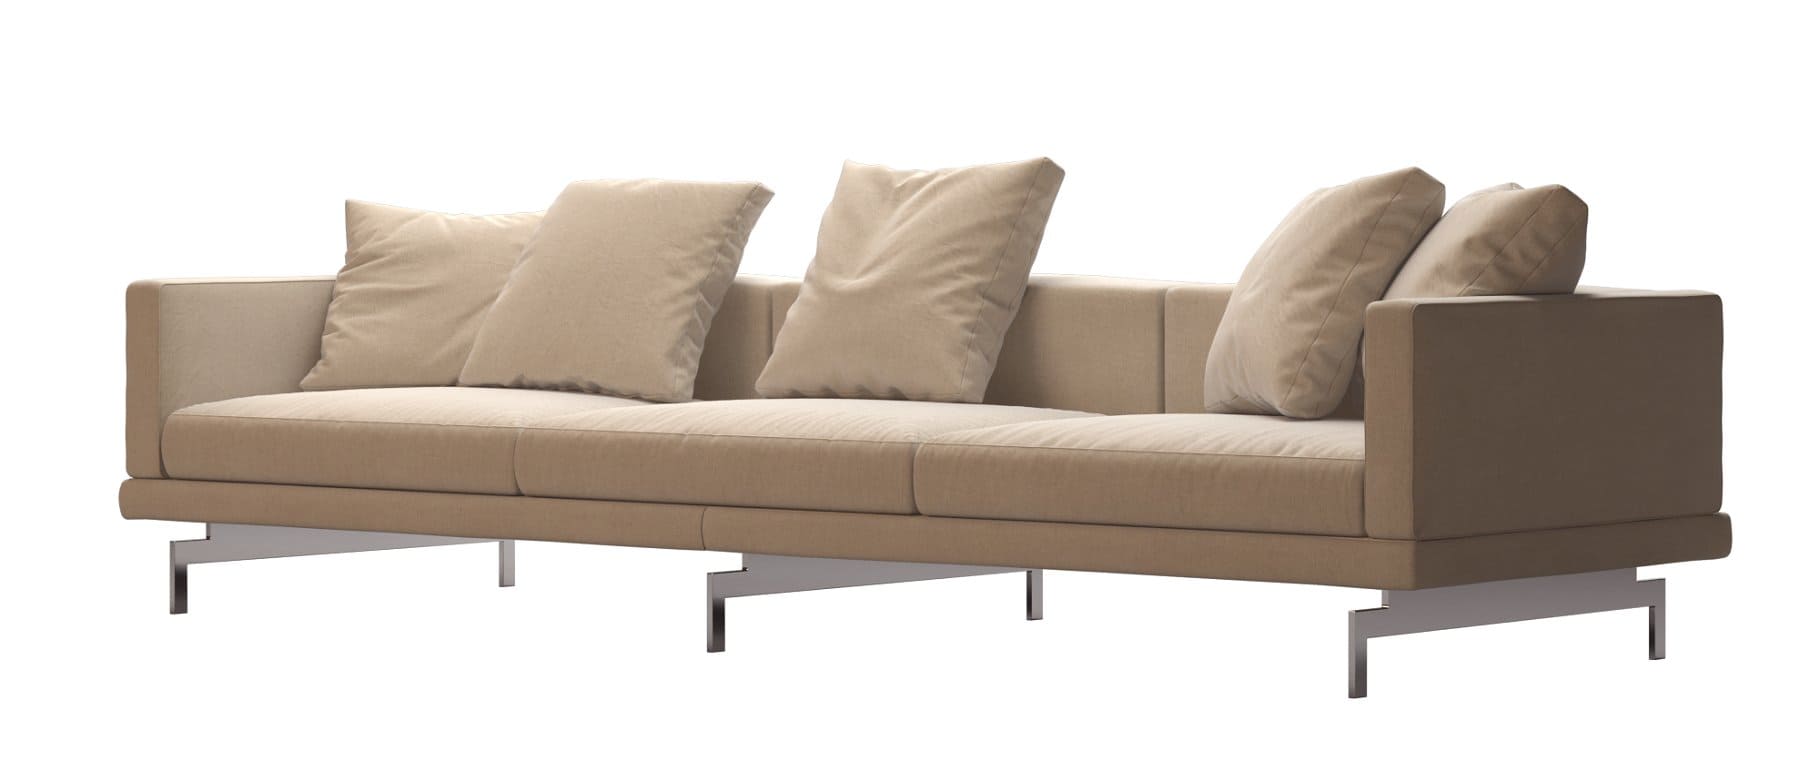 Unusual metal legs of a large beige sofa.